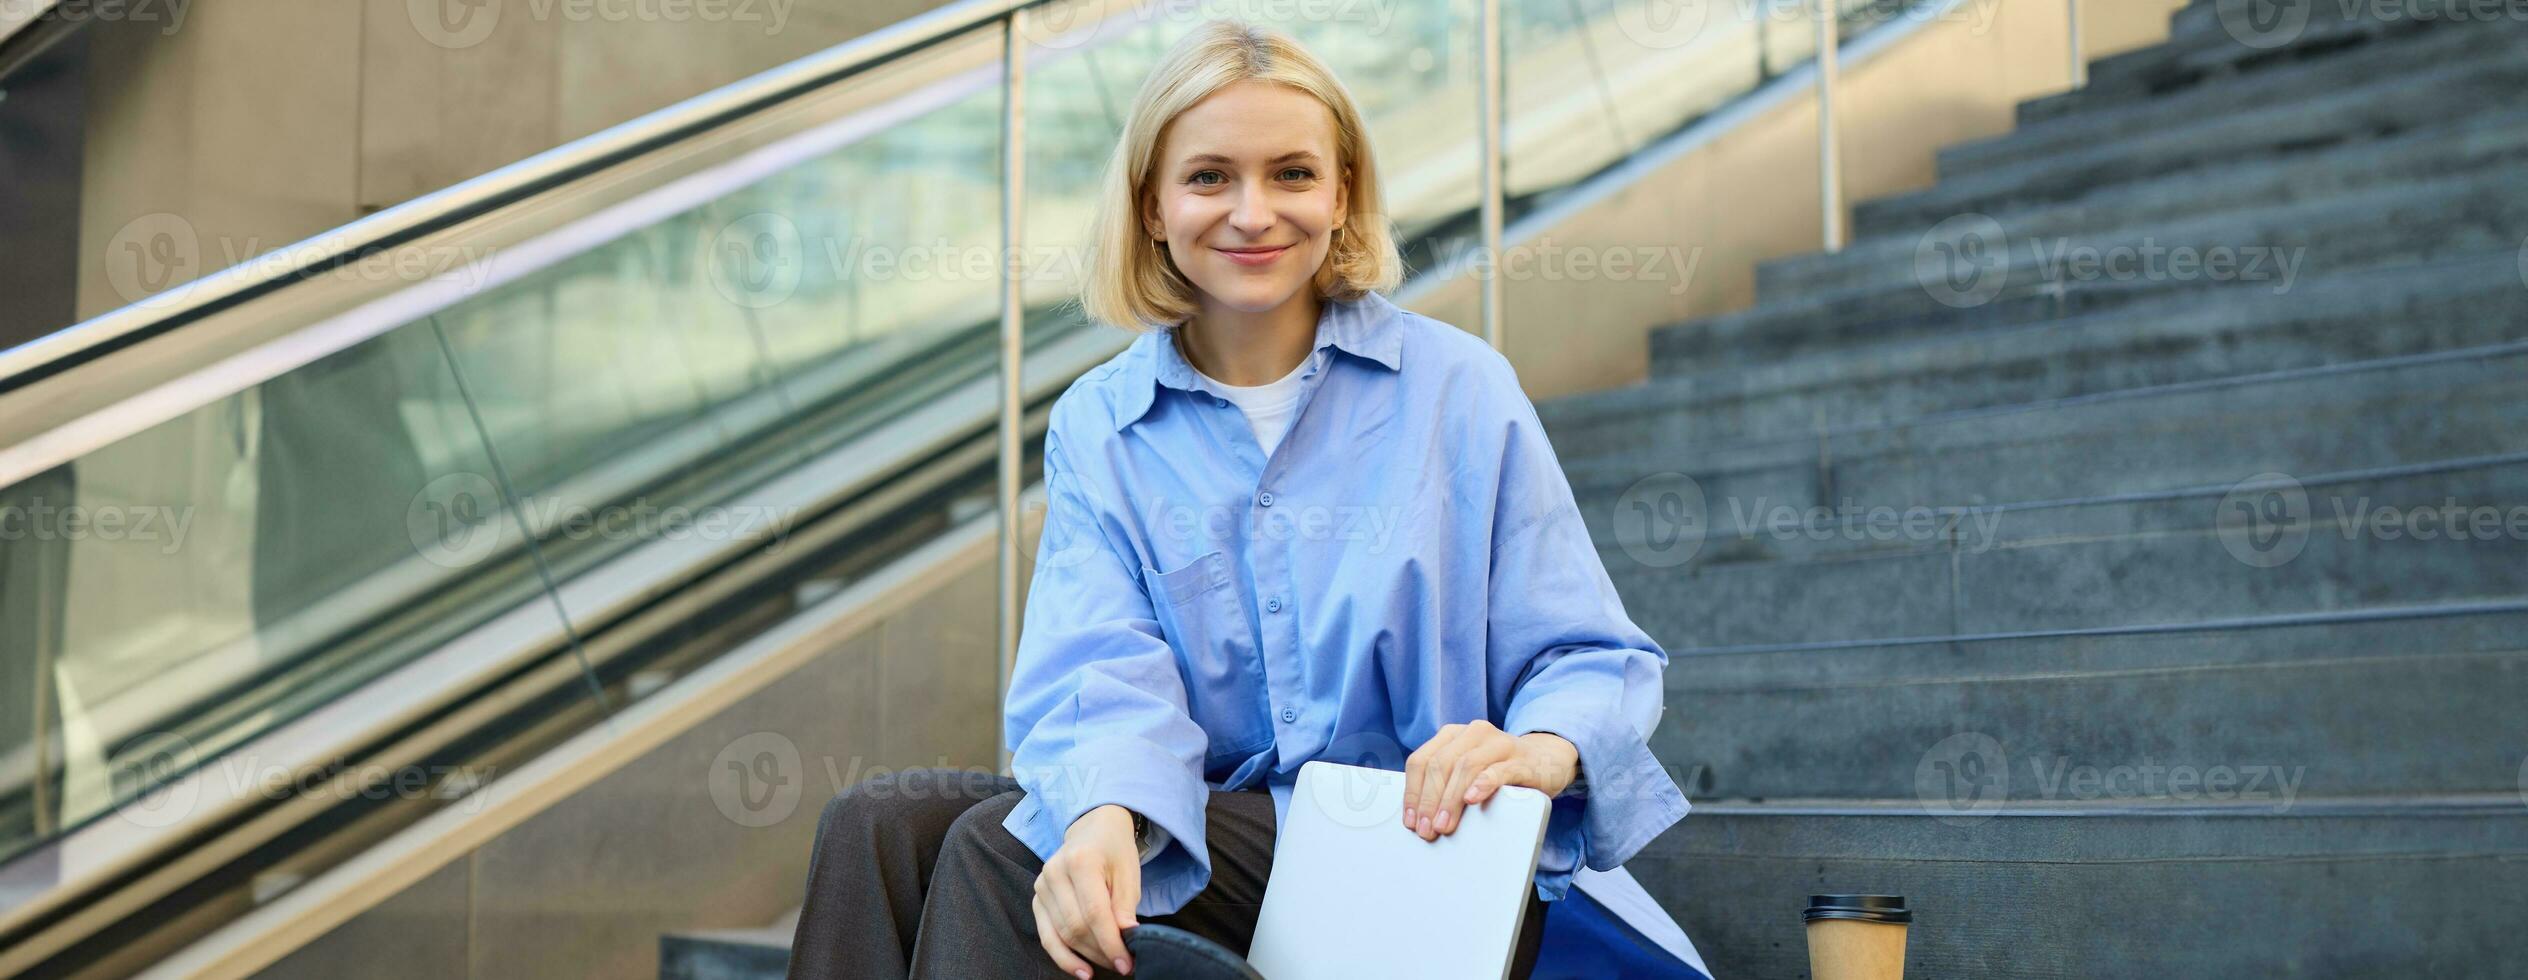 Porträt von schön lächelnd Frau, Schüler auf Treppe im Stadt, Sitzung und Trinken Kaffee, Verpackung Laptop im Rucksack, suchen glücklich beim Kamera foto